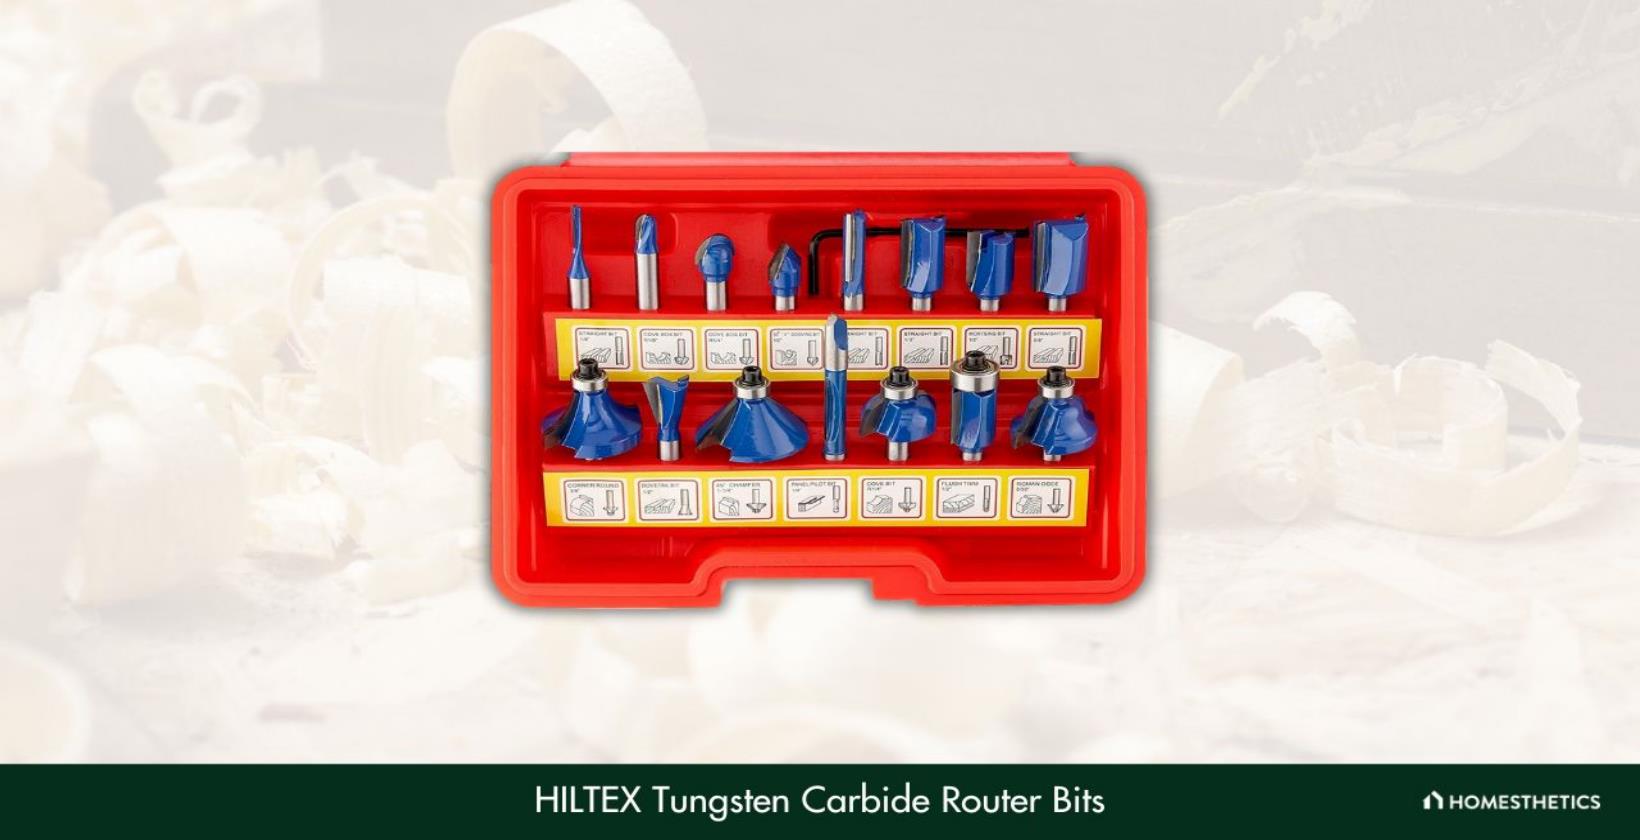 1. HILTEX Tungsten Carbide Router Bits